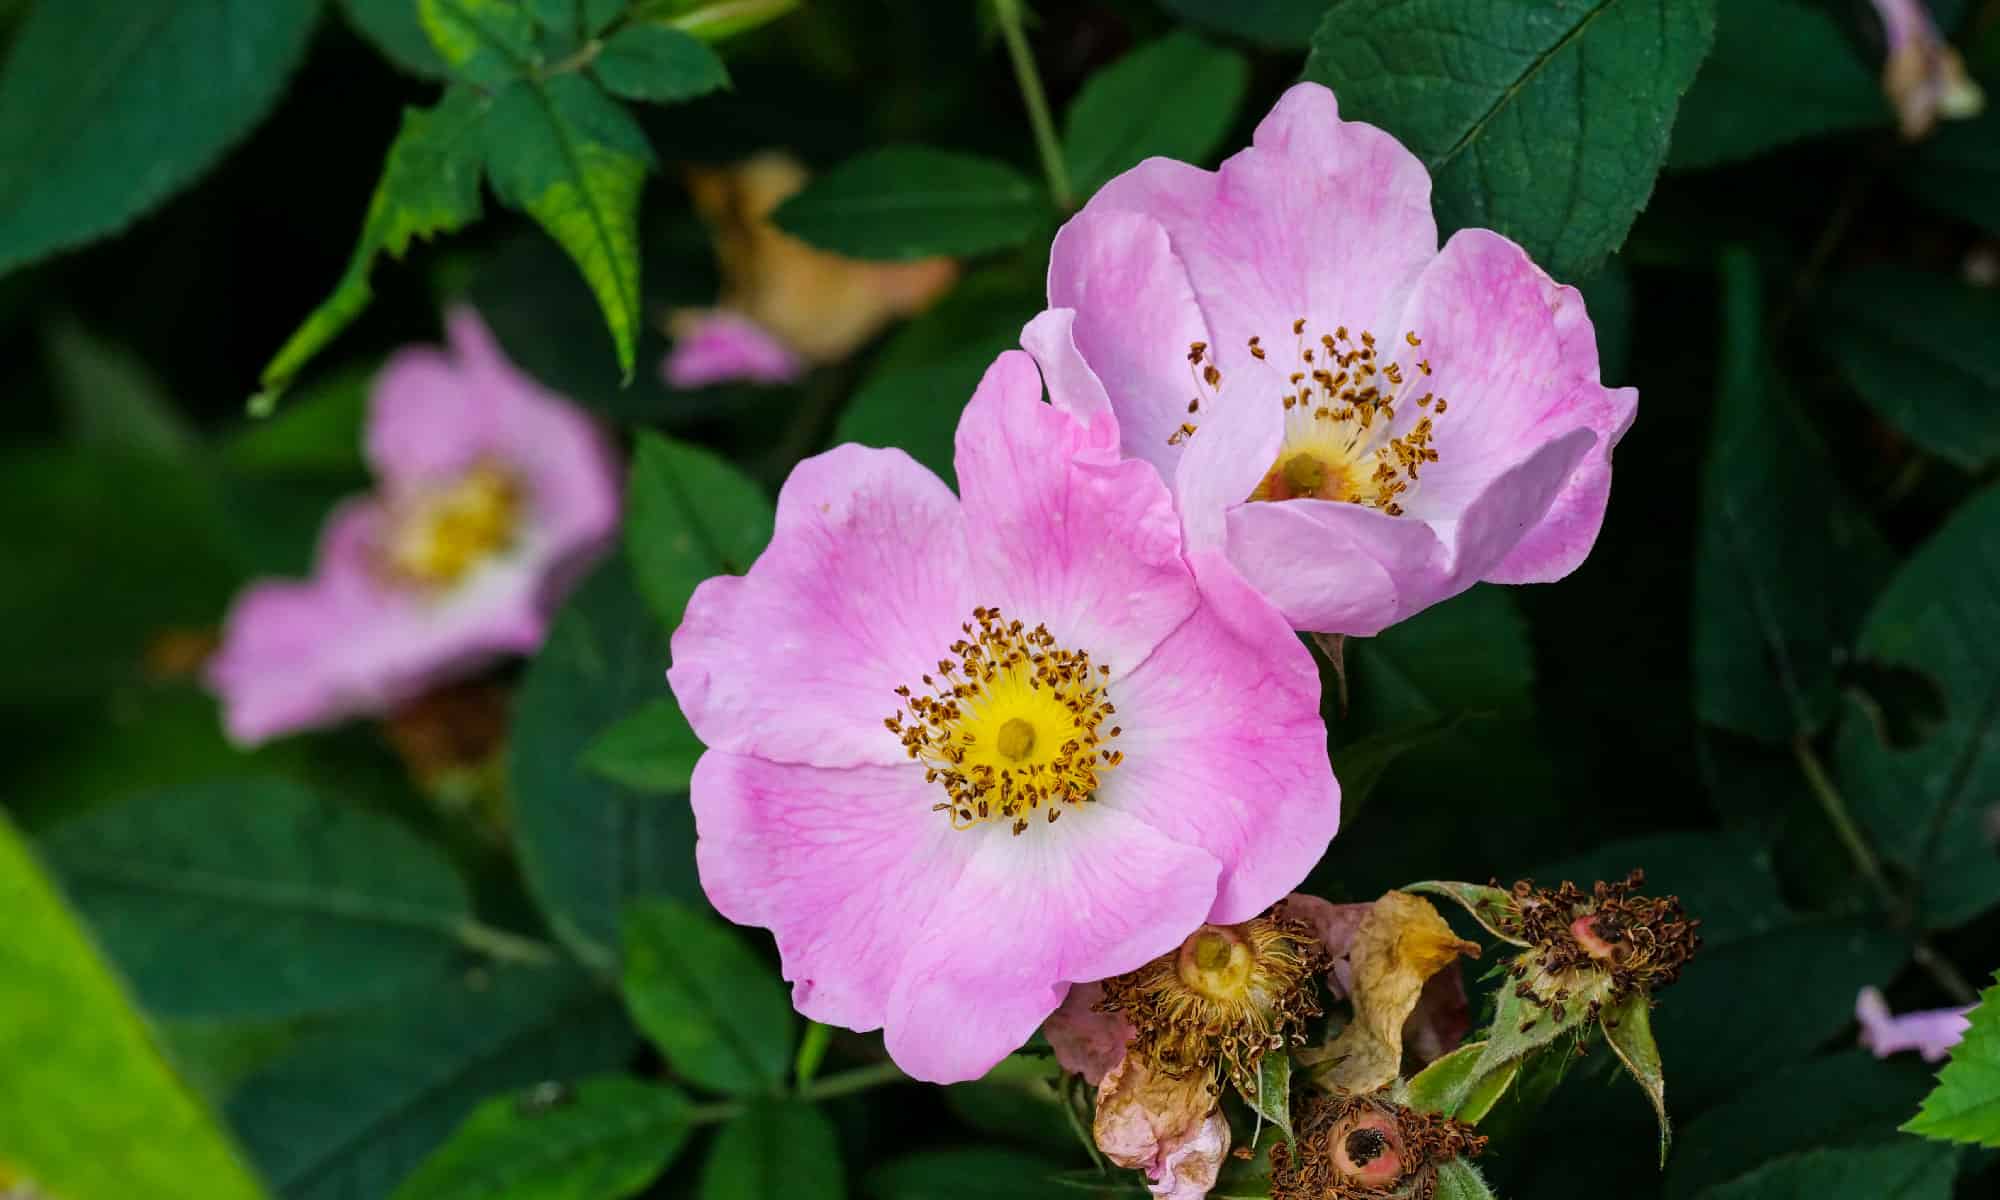 Bright Pink Small Natural Rose Petal Sample - Real Flower Petal